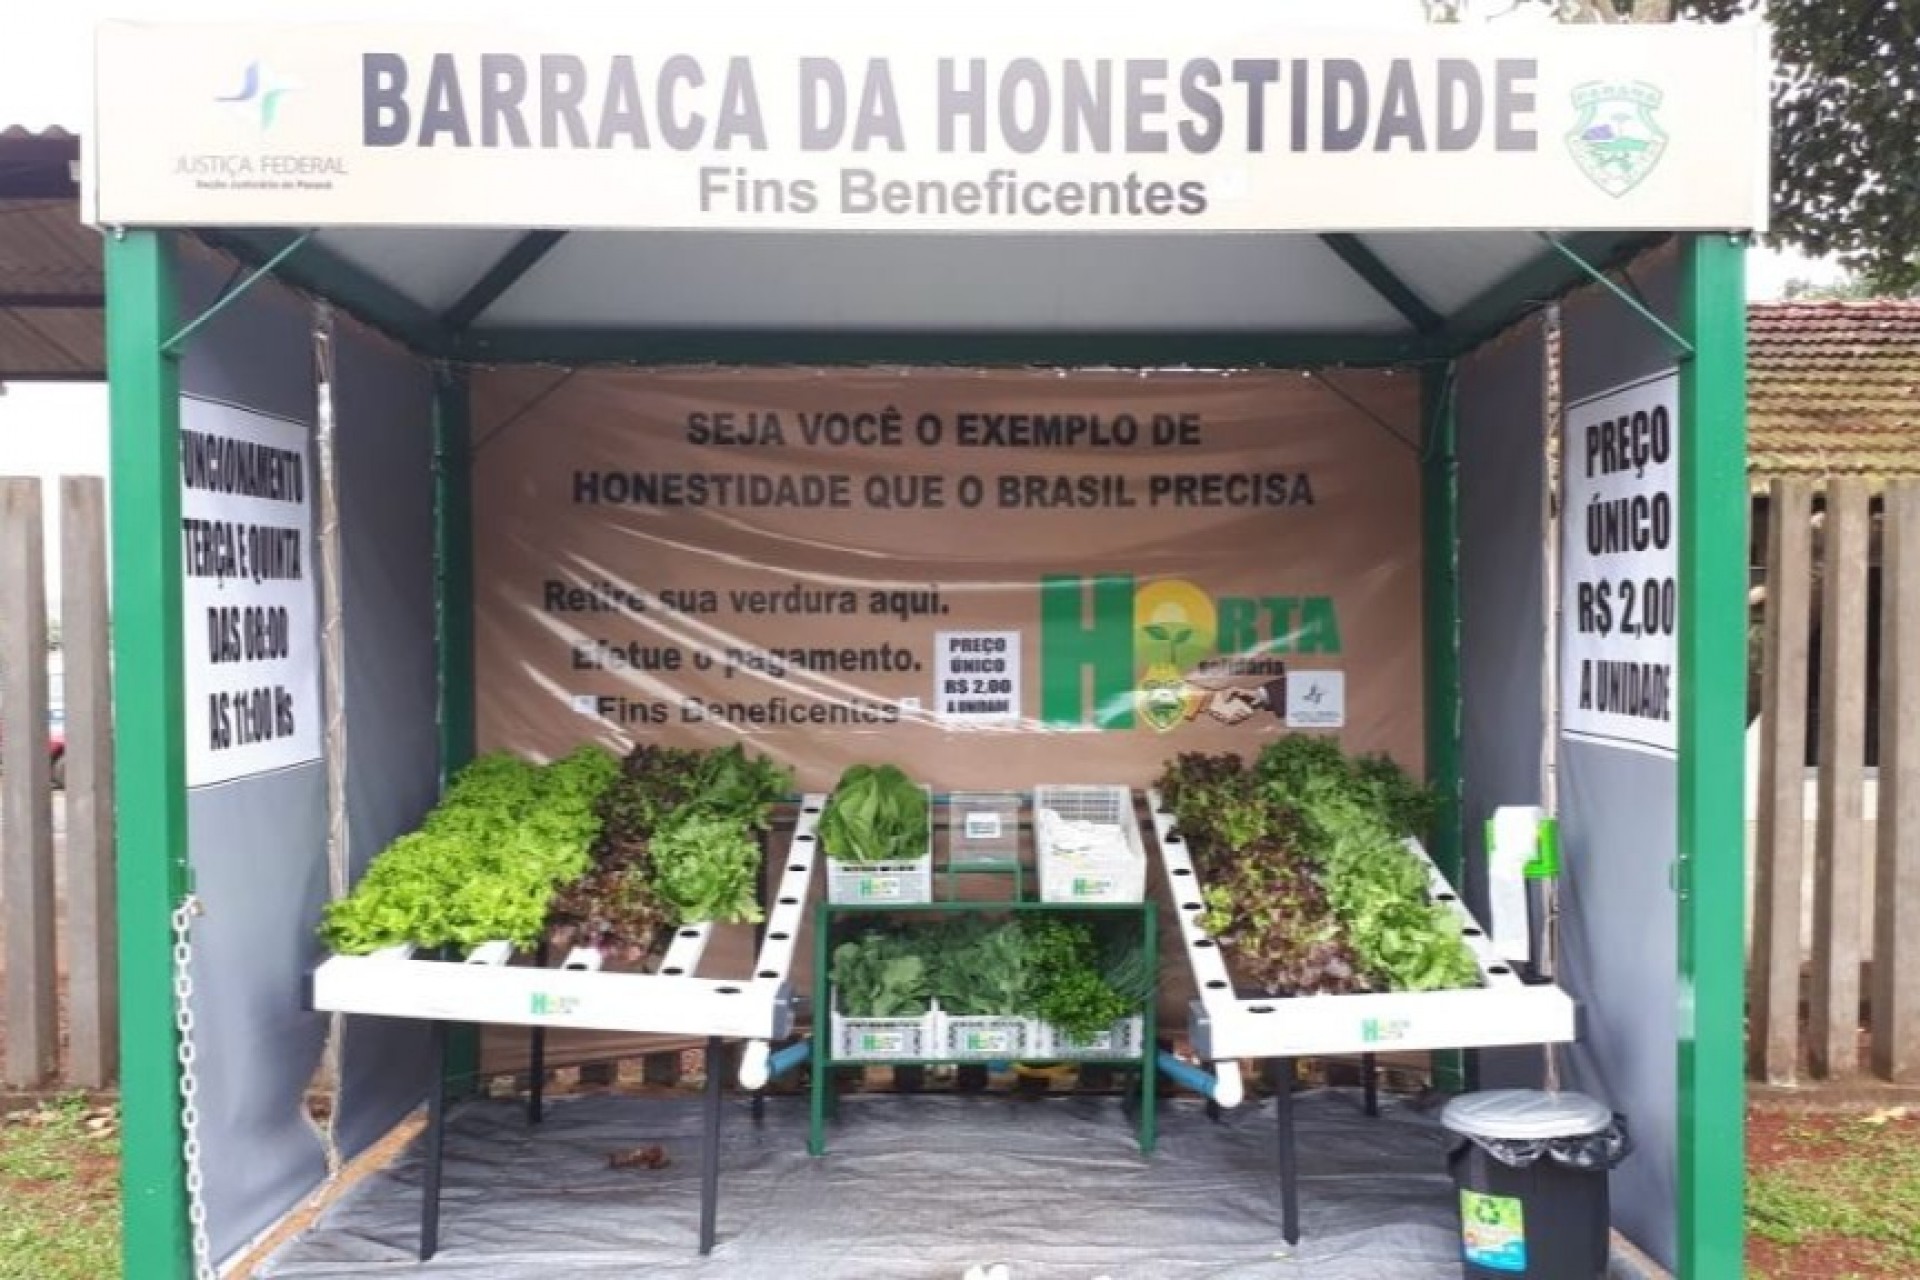 Barraca sem vendedor aposta na honestidade das pessoas em Foz do Iguaçu